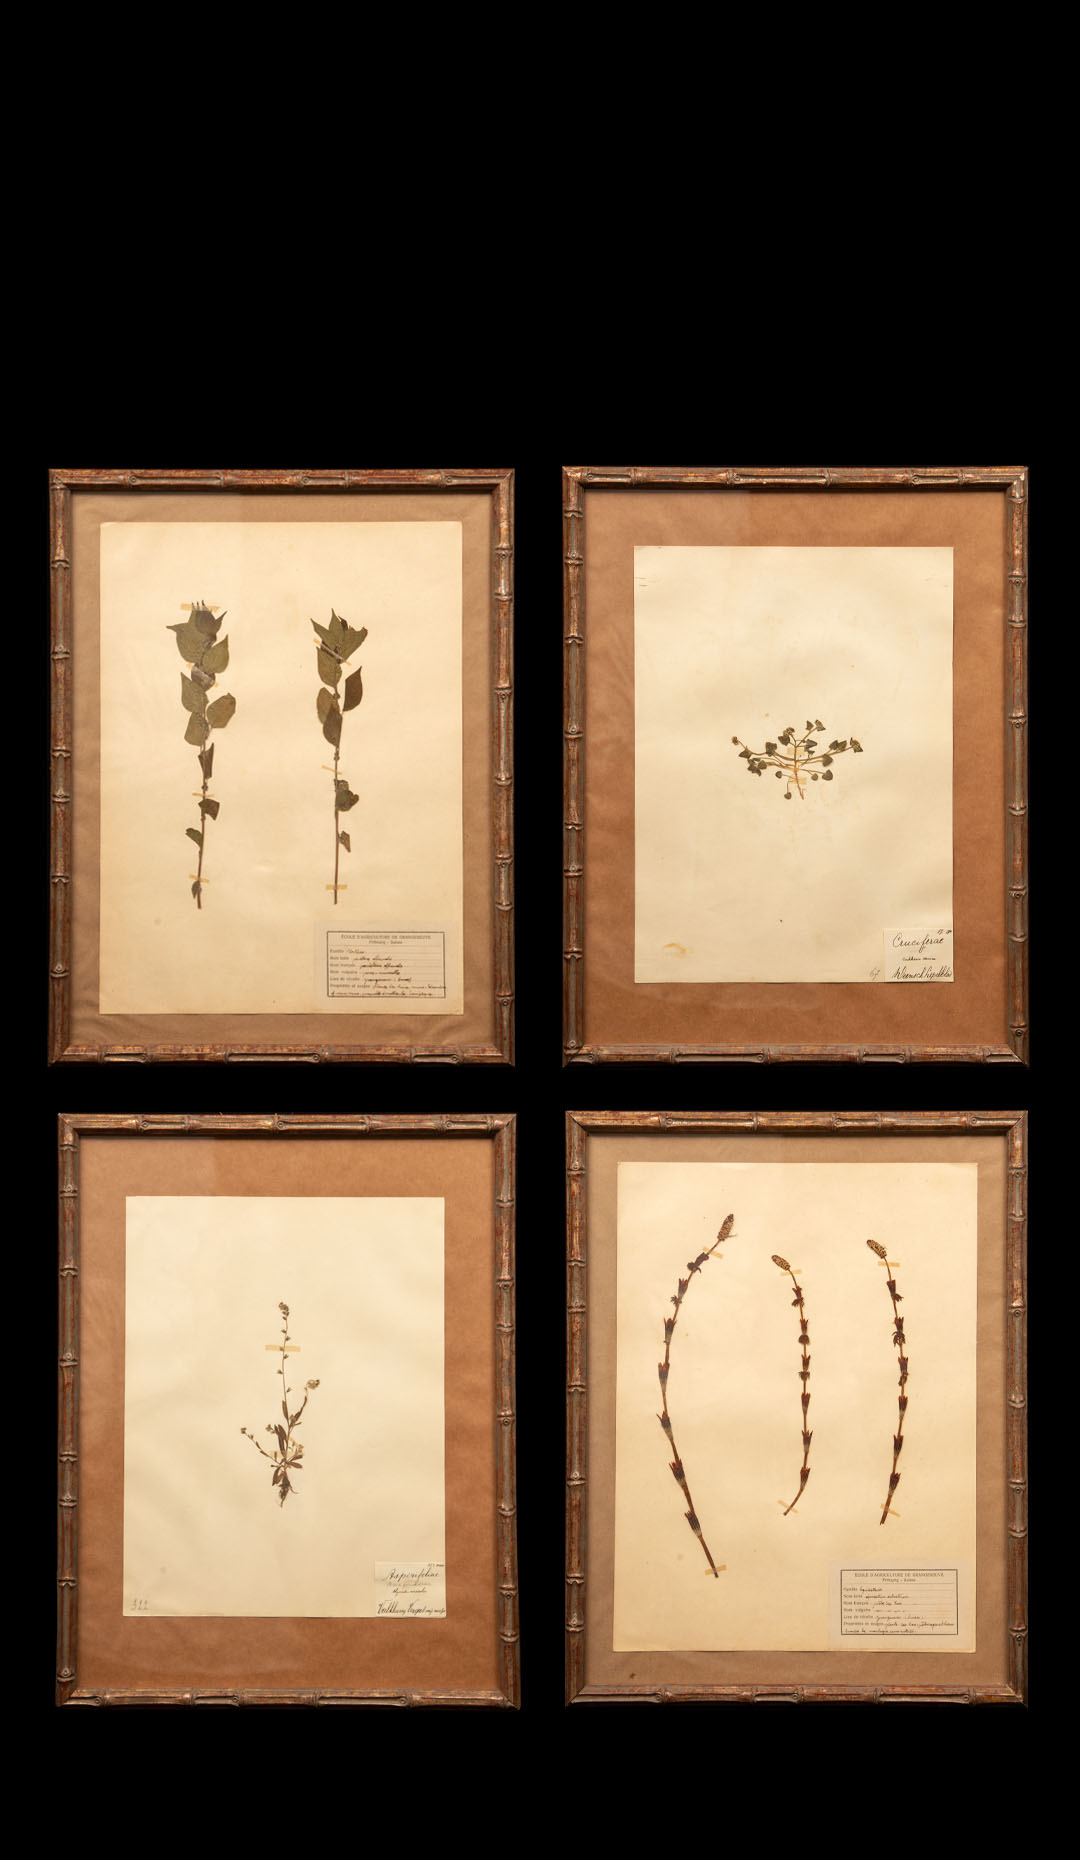 Gilt Framed Herbier Botanical Specimens from the 19th Century